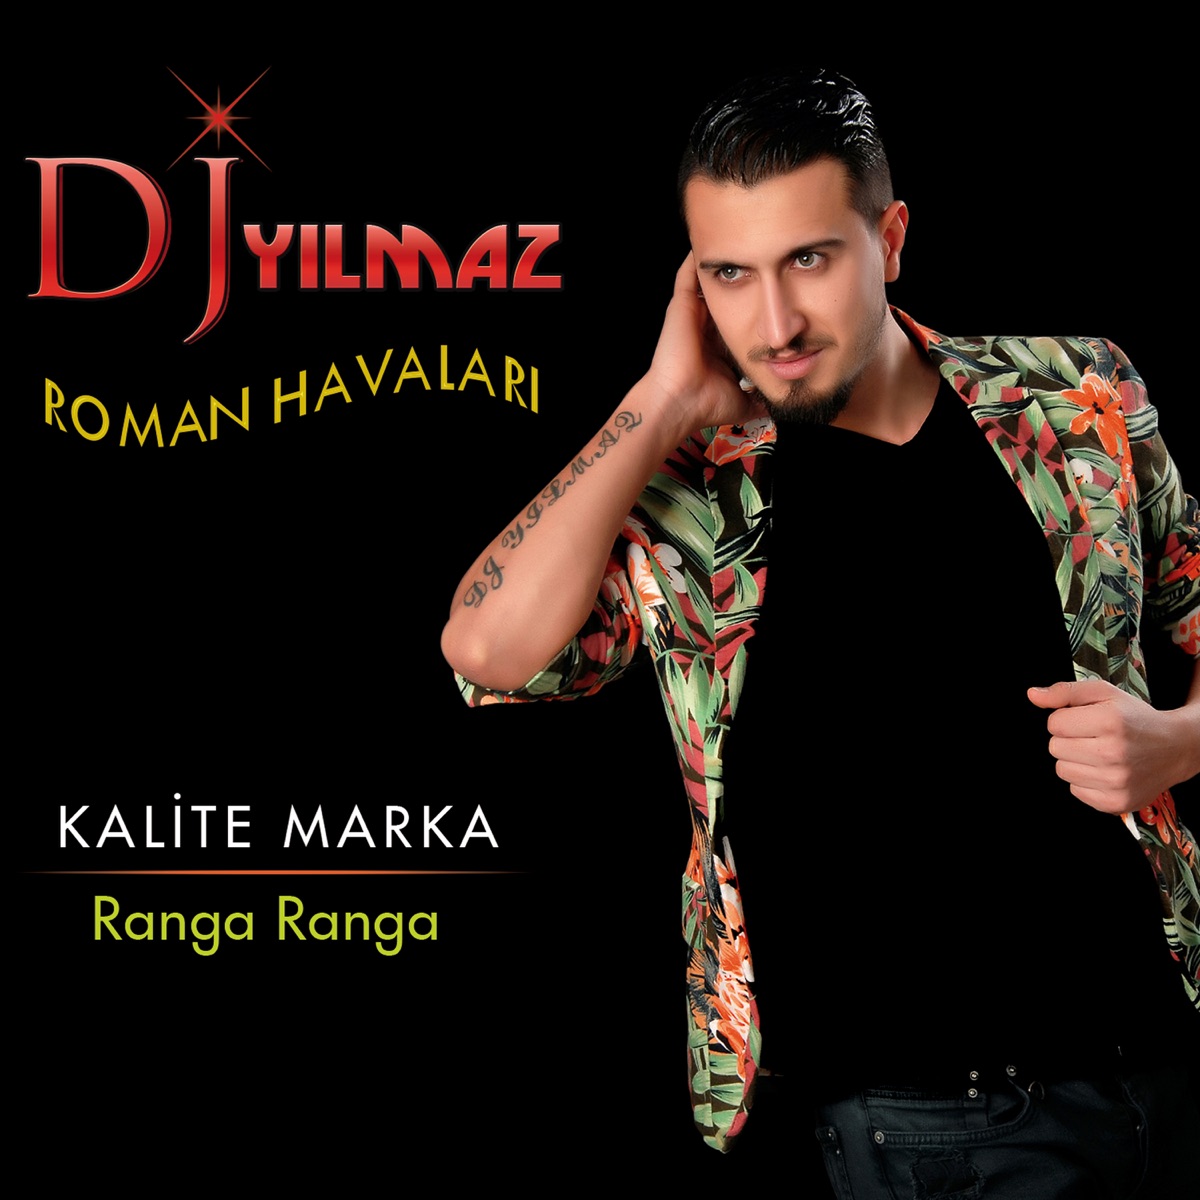 Ranga Ranga - Kalite Marka (Roman Havaları) - Album by DJ Yılmaz - Apple  Music